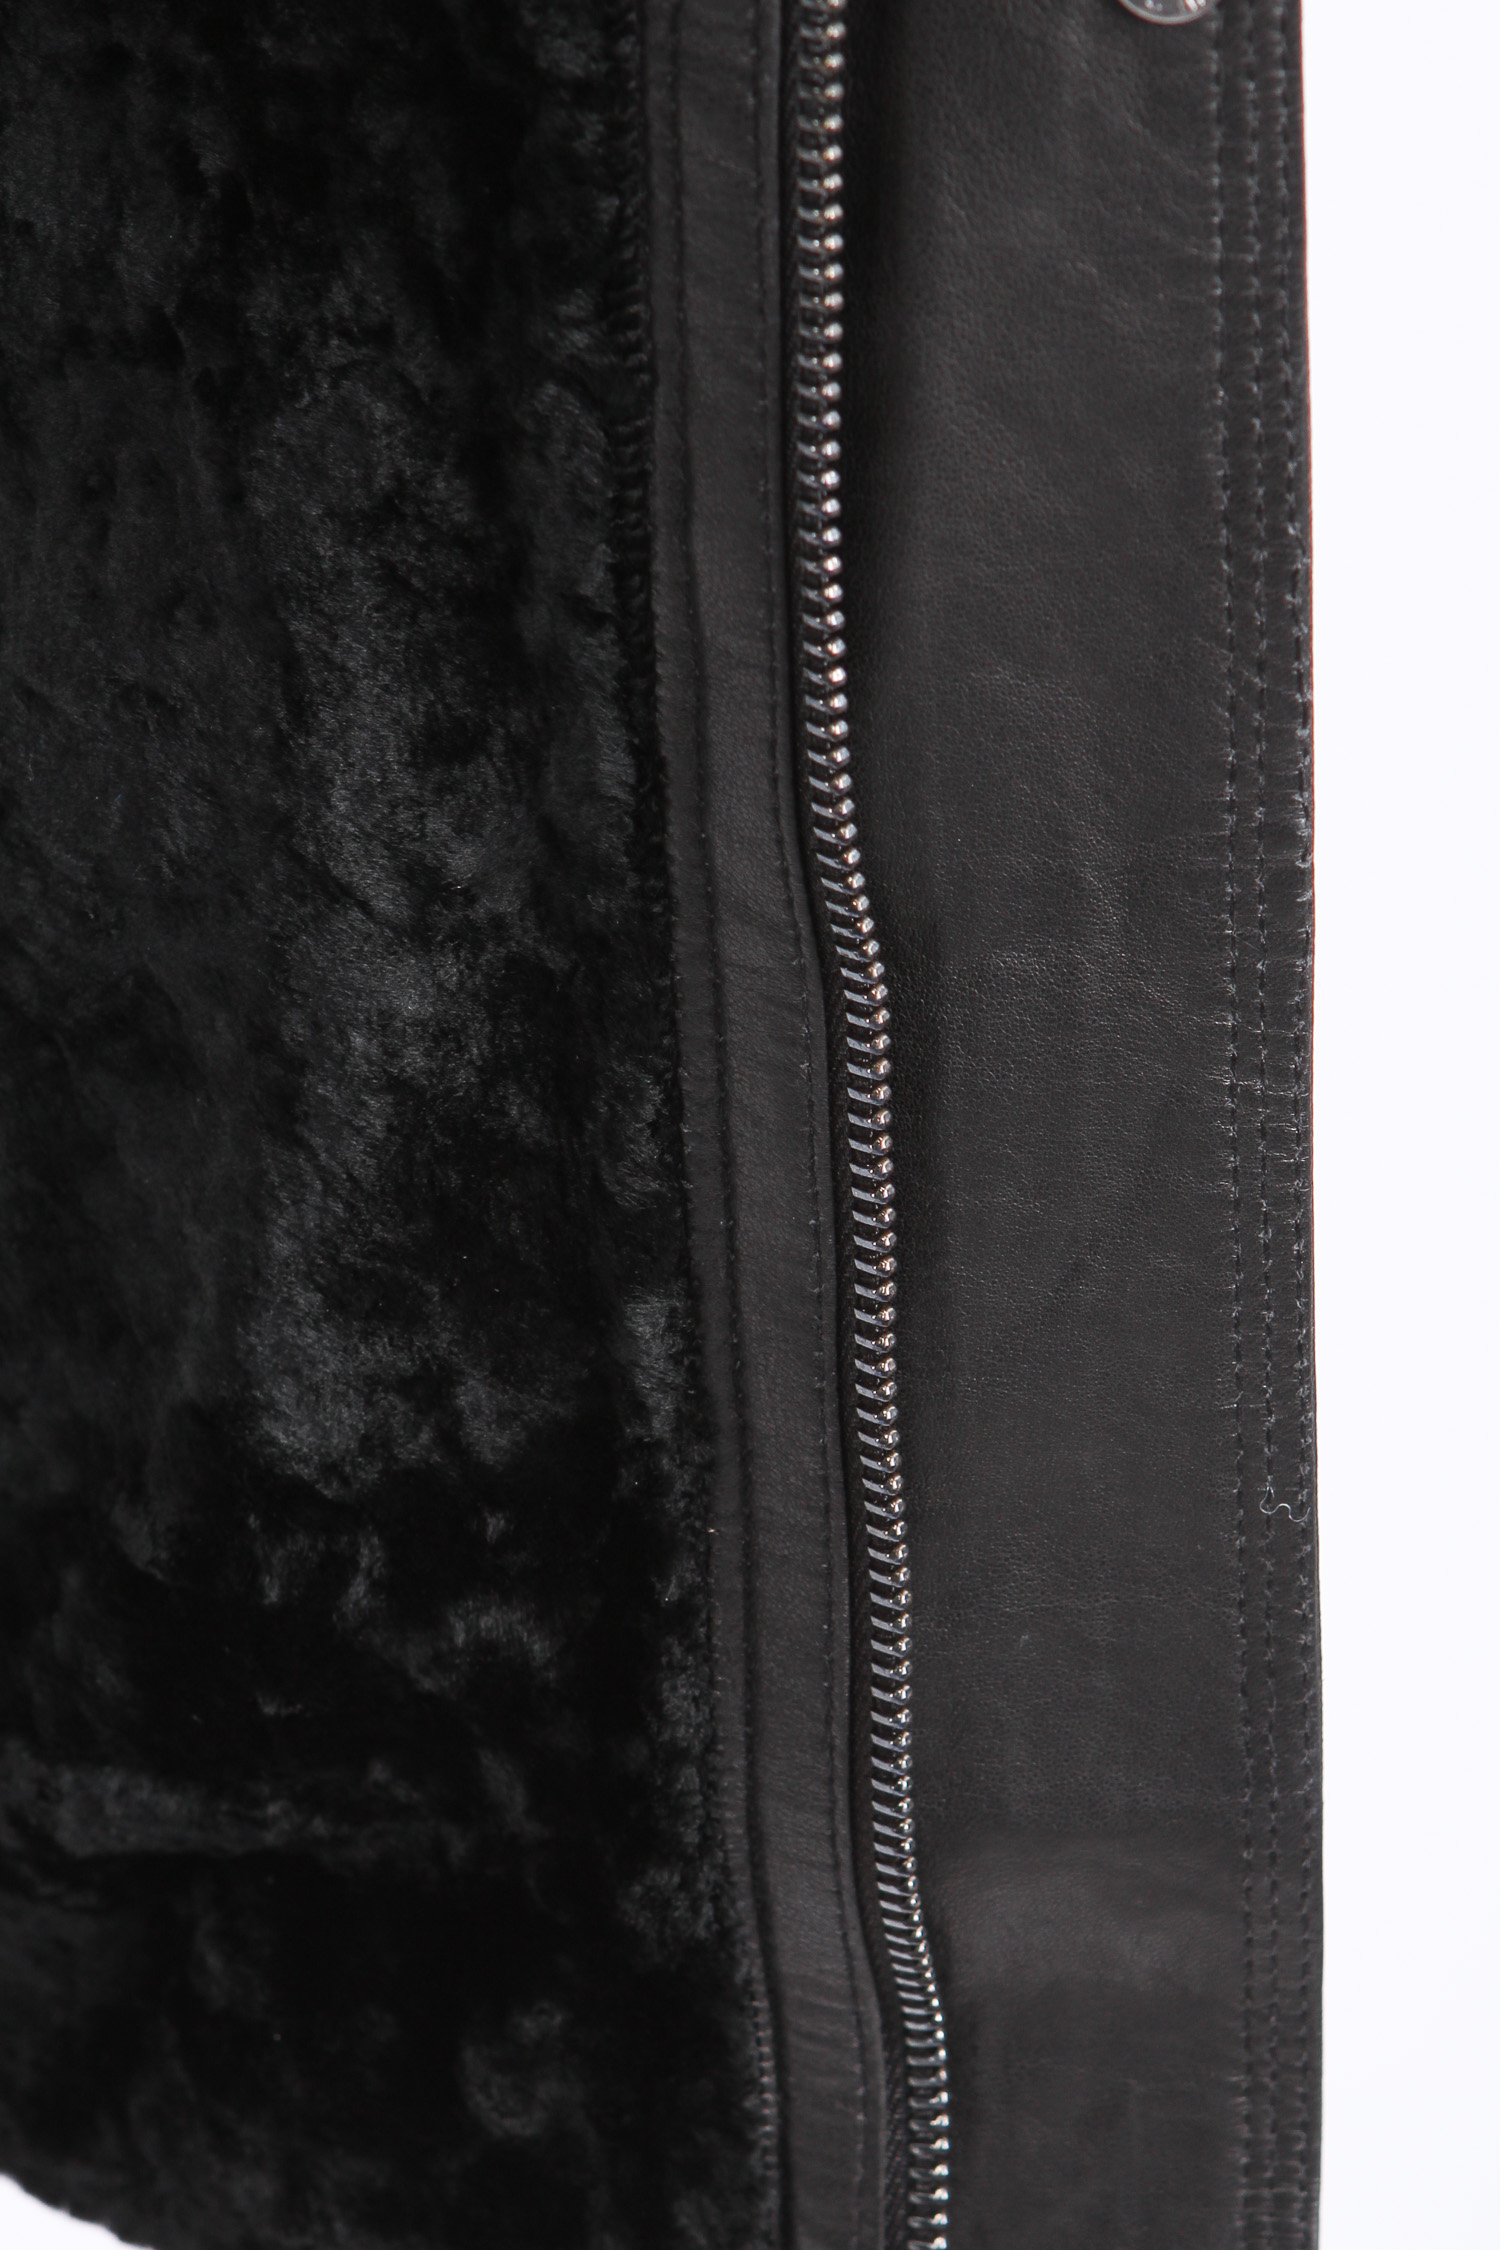 Мужская кожаная куртка из натуральной кожи  на меху с капюшоном, отделка чернобурка